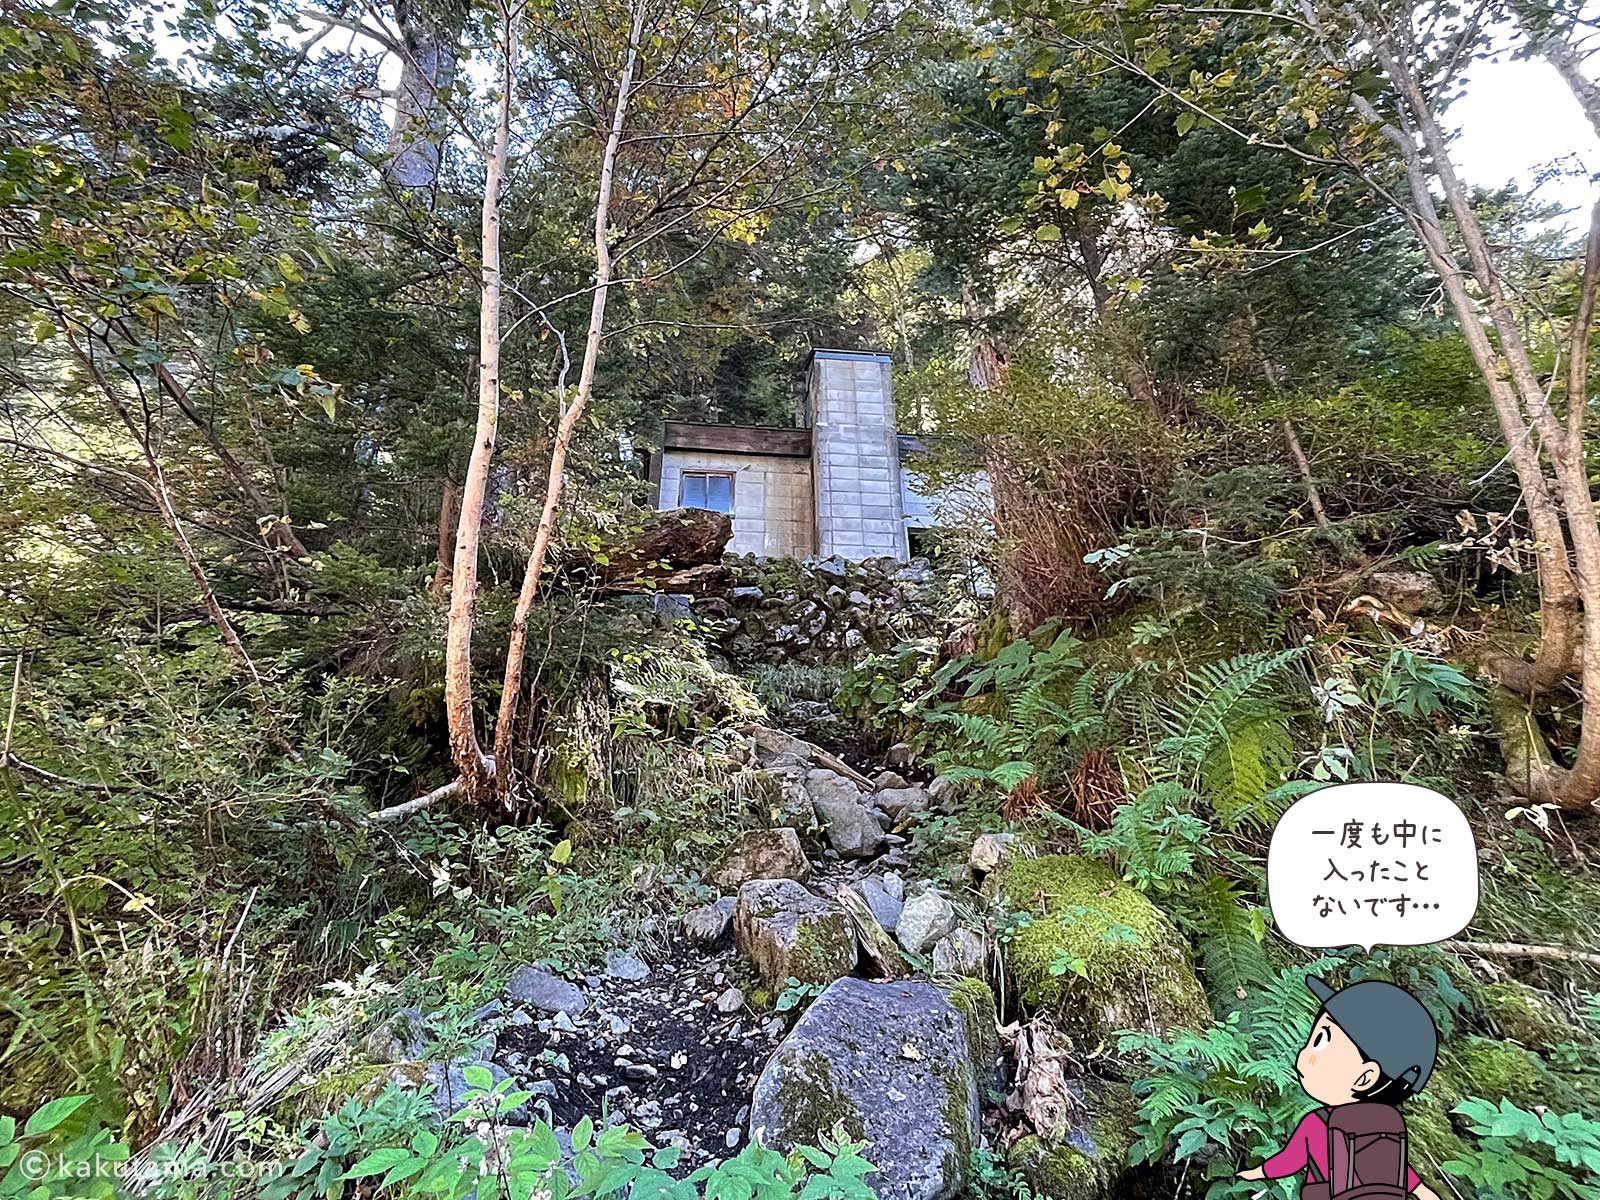 滝谷避難小屋の写真と登山者のイラスト